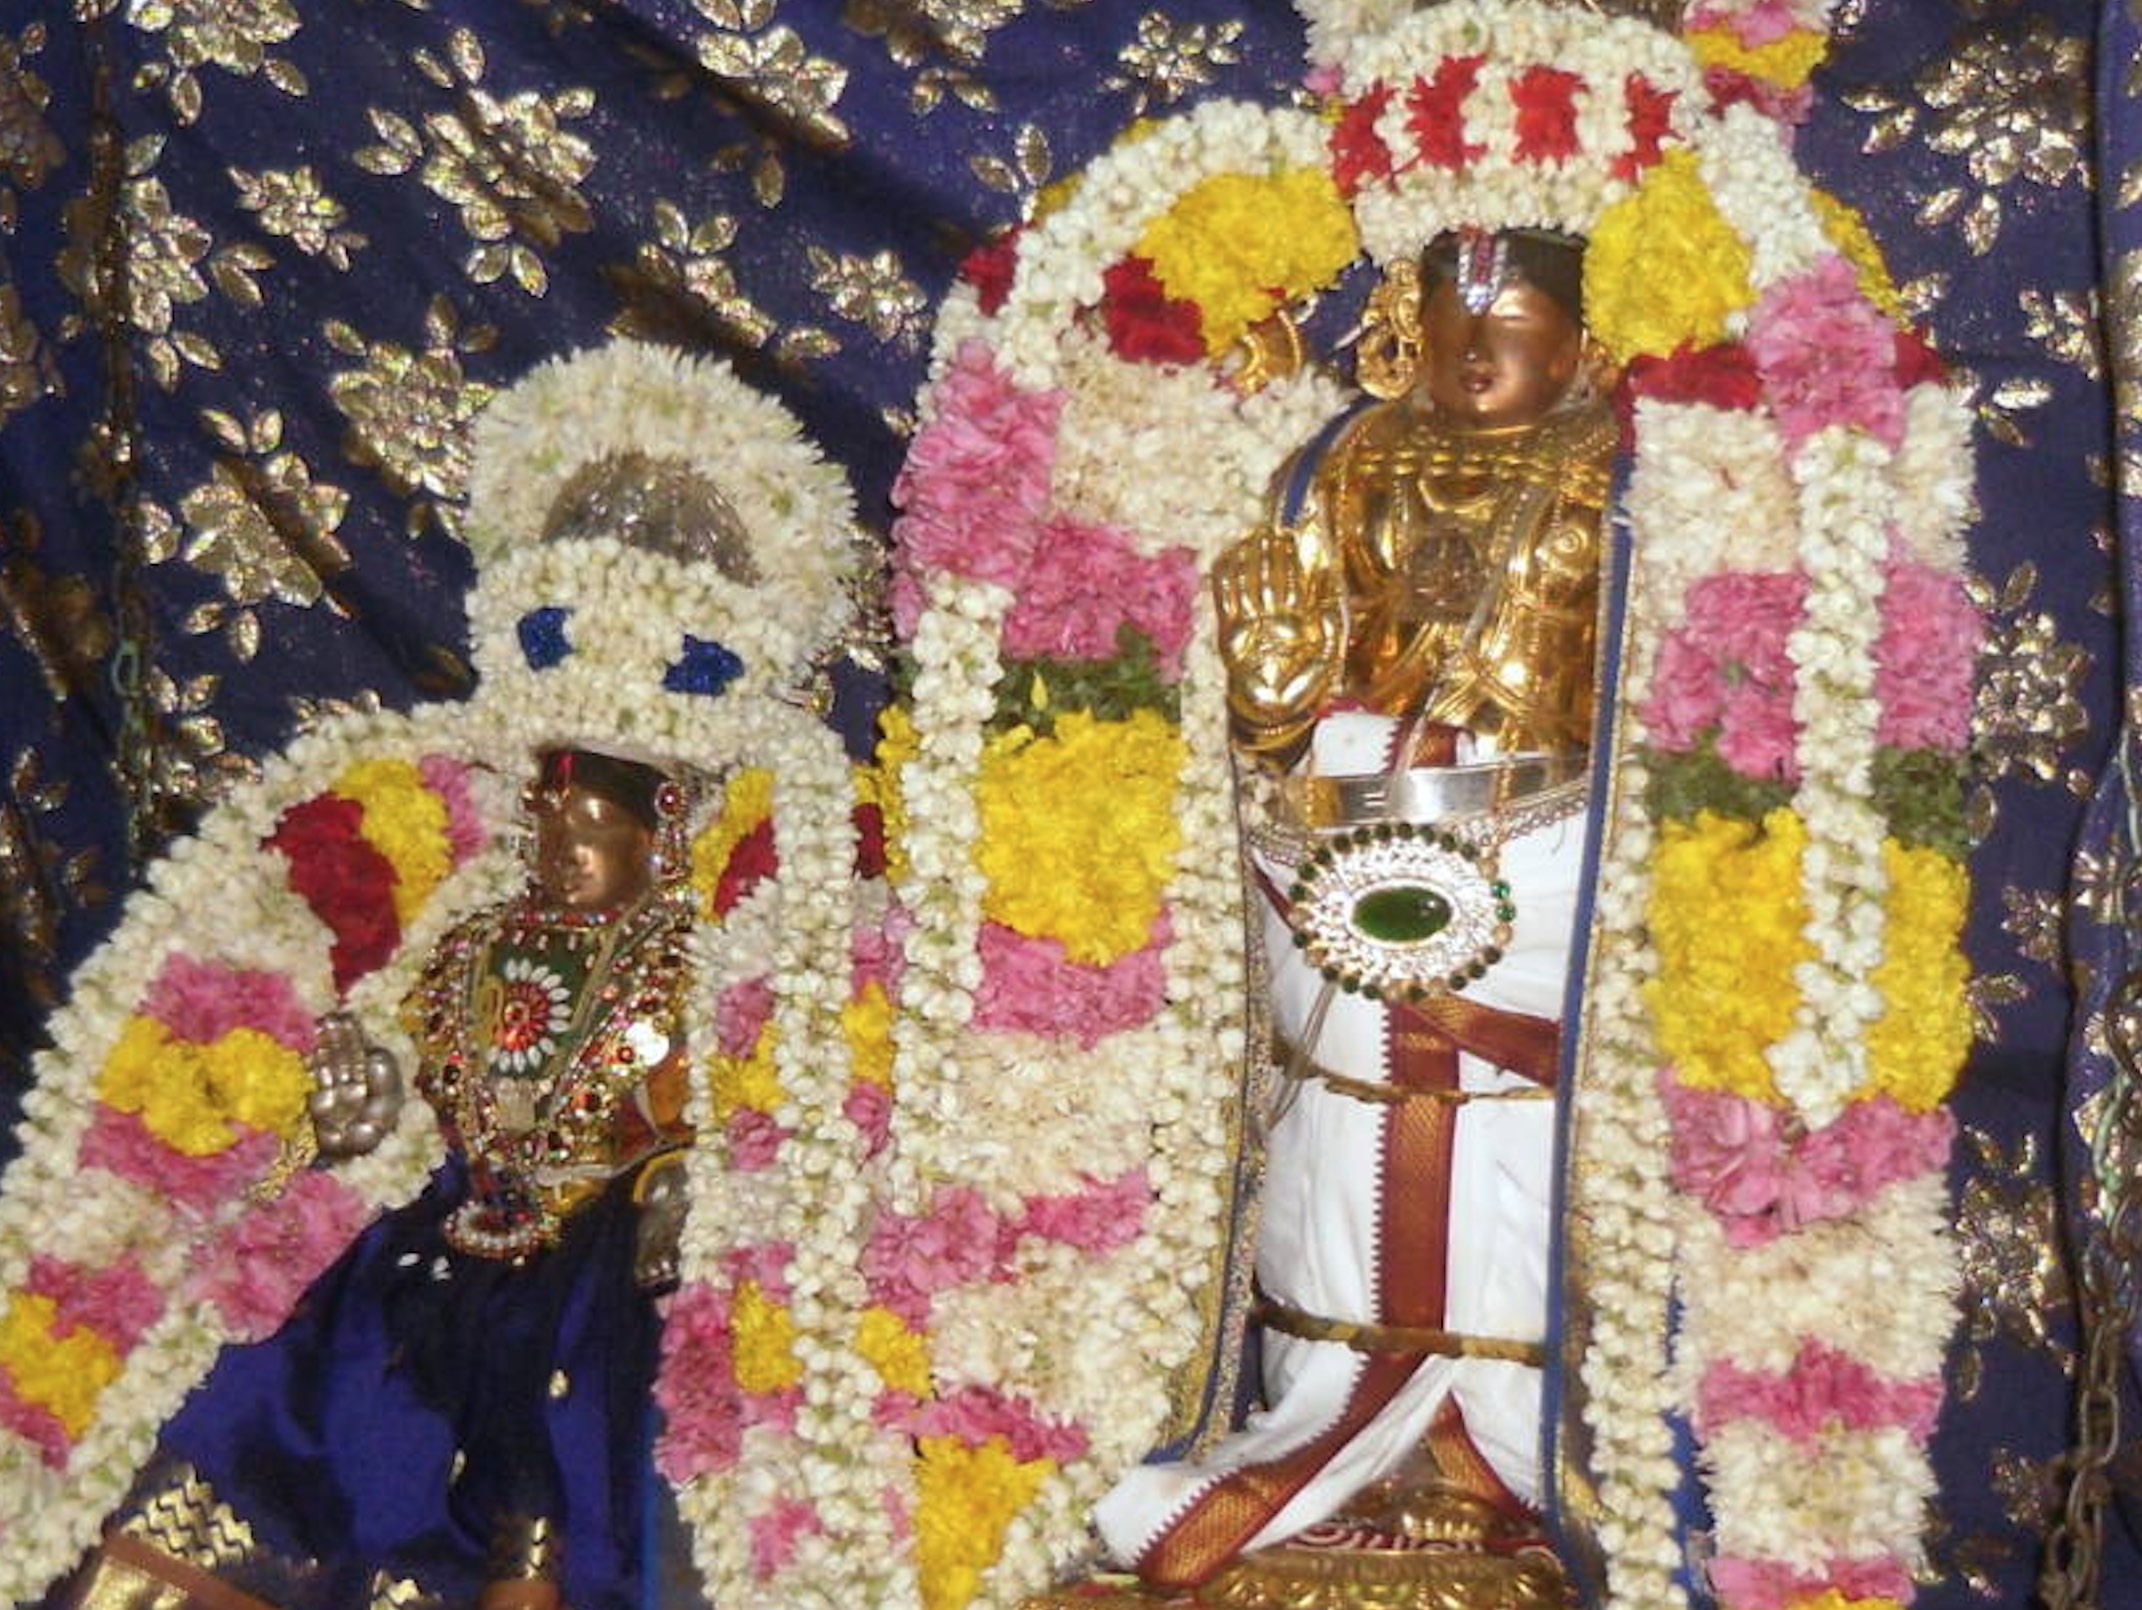 Thirukannamangai Sri Bhakthavatsala Perumal Thirukalyana Mahotsavam 2015